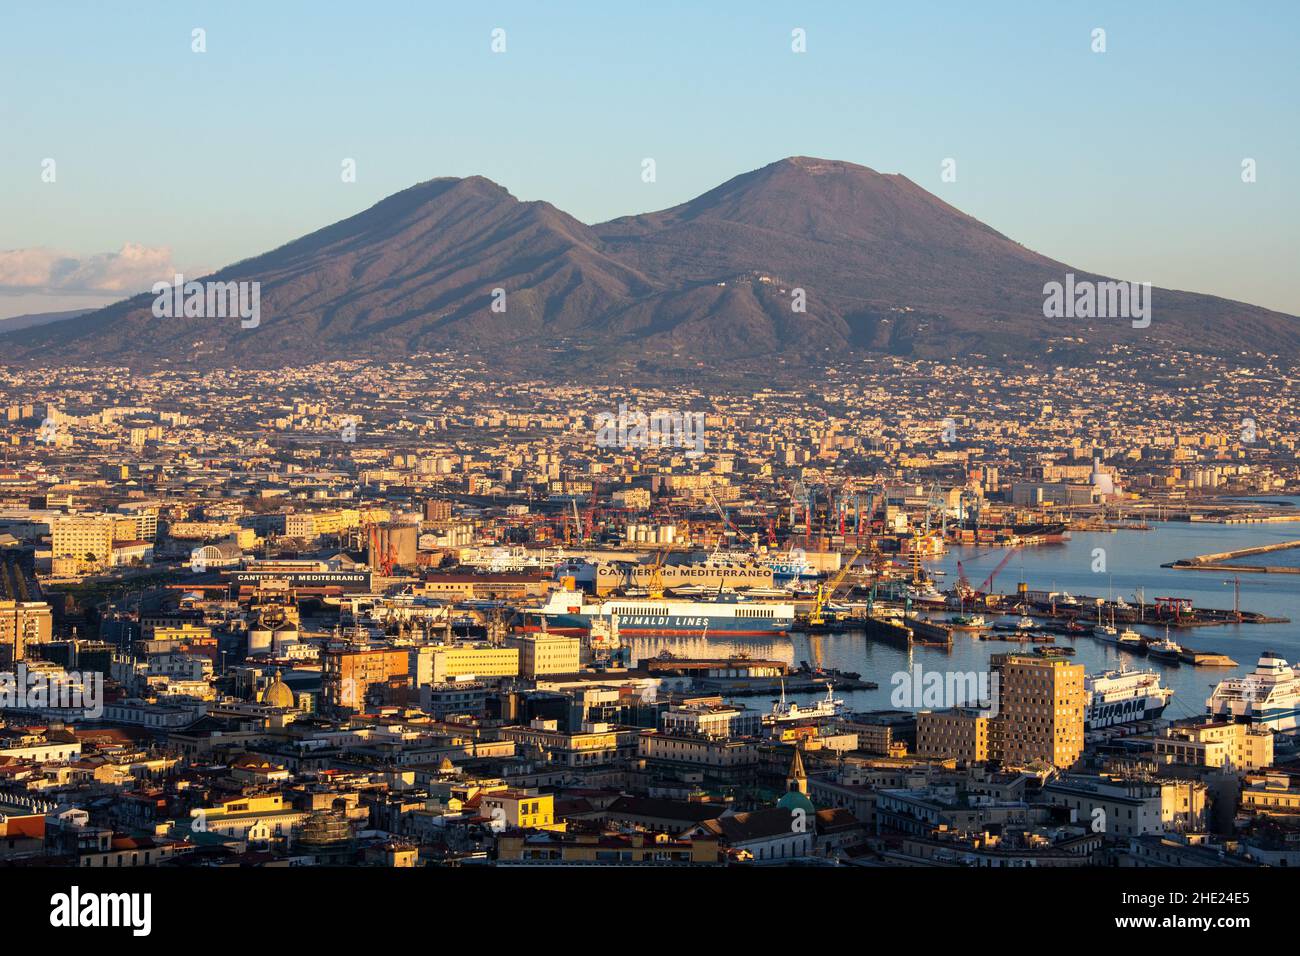 Mount Vesuvius from Naples, Italy Stock Photo